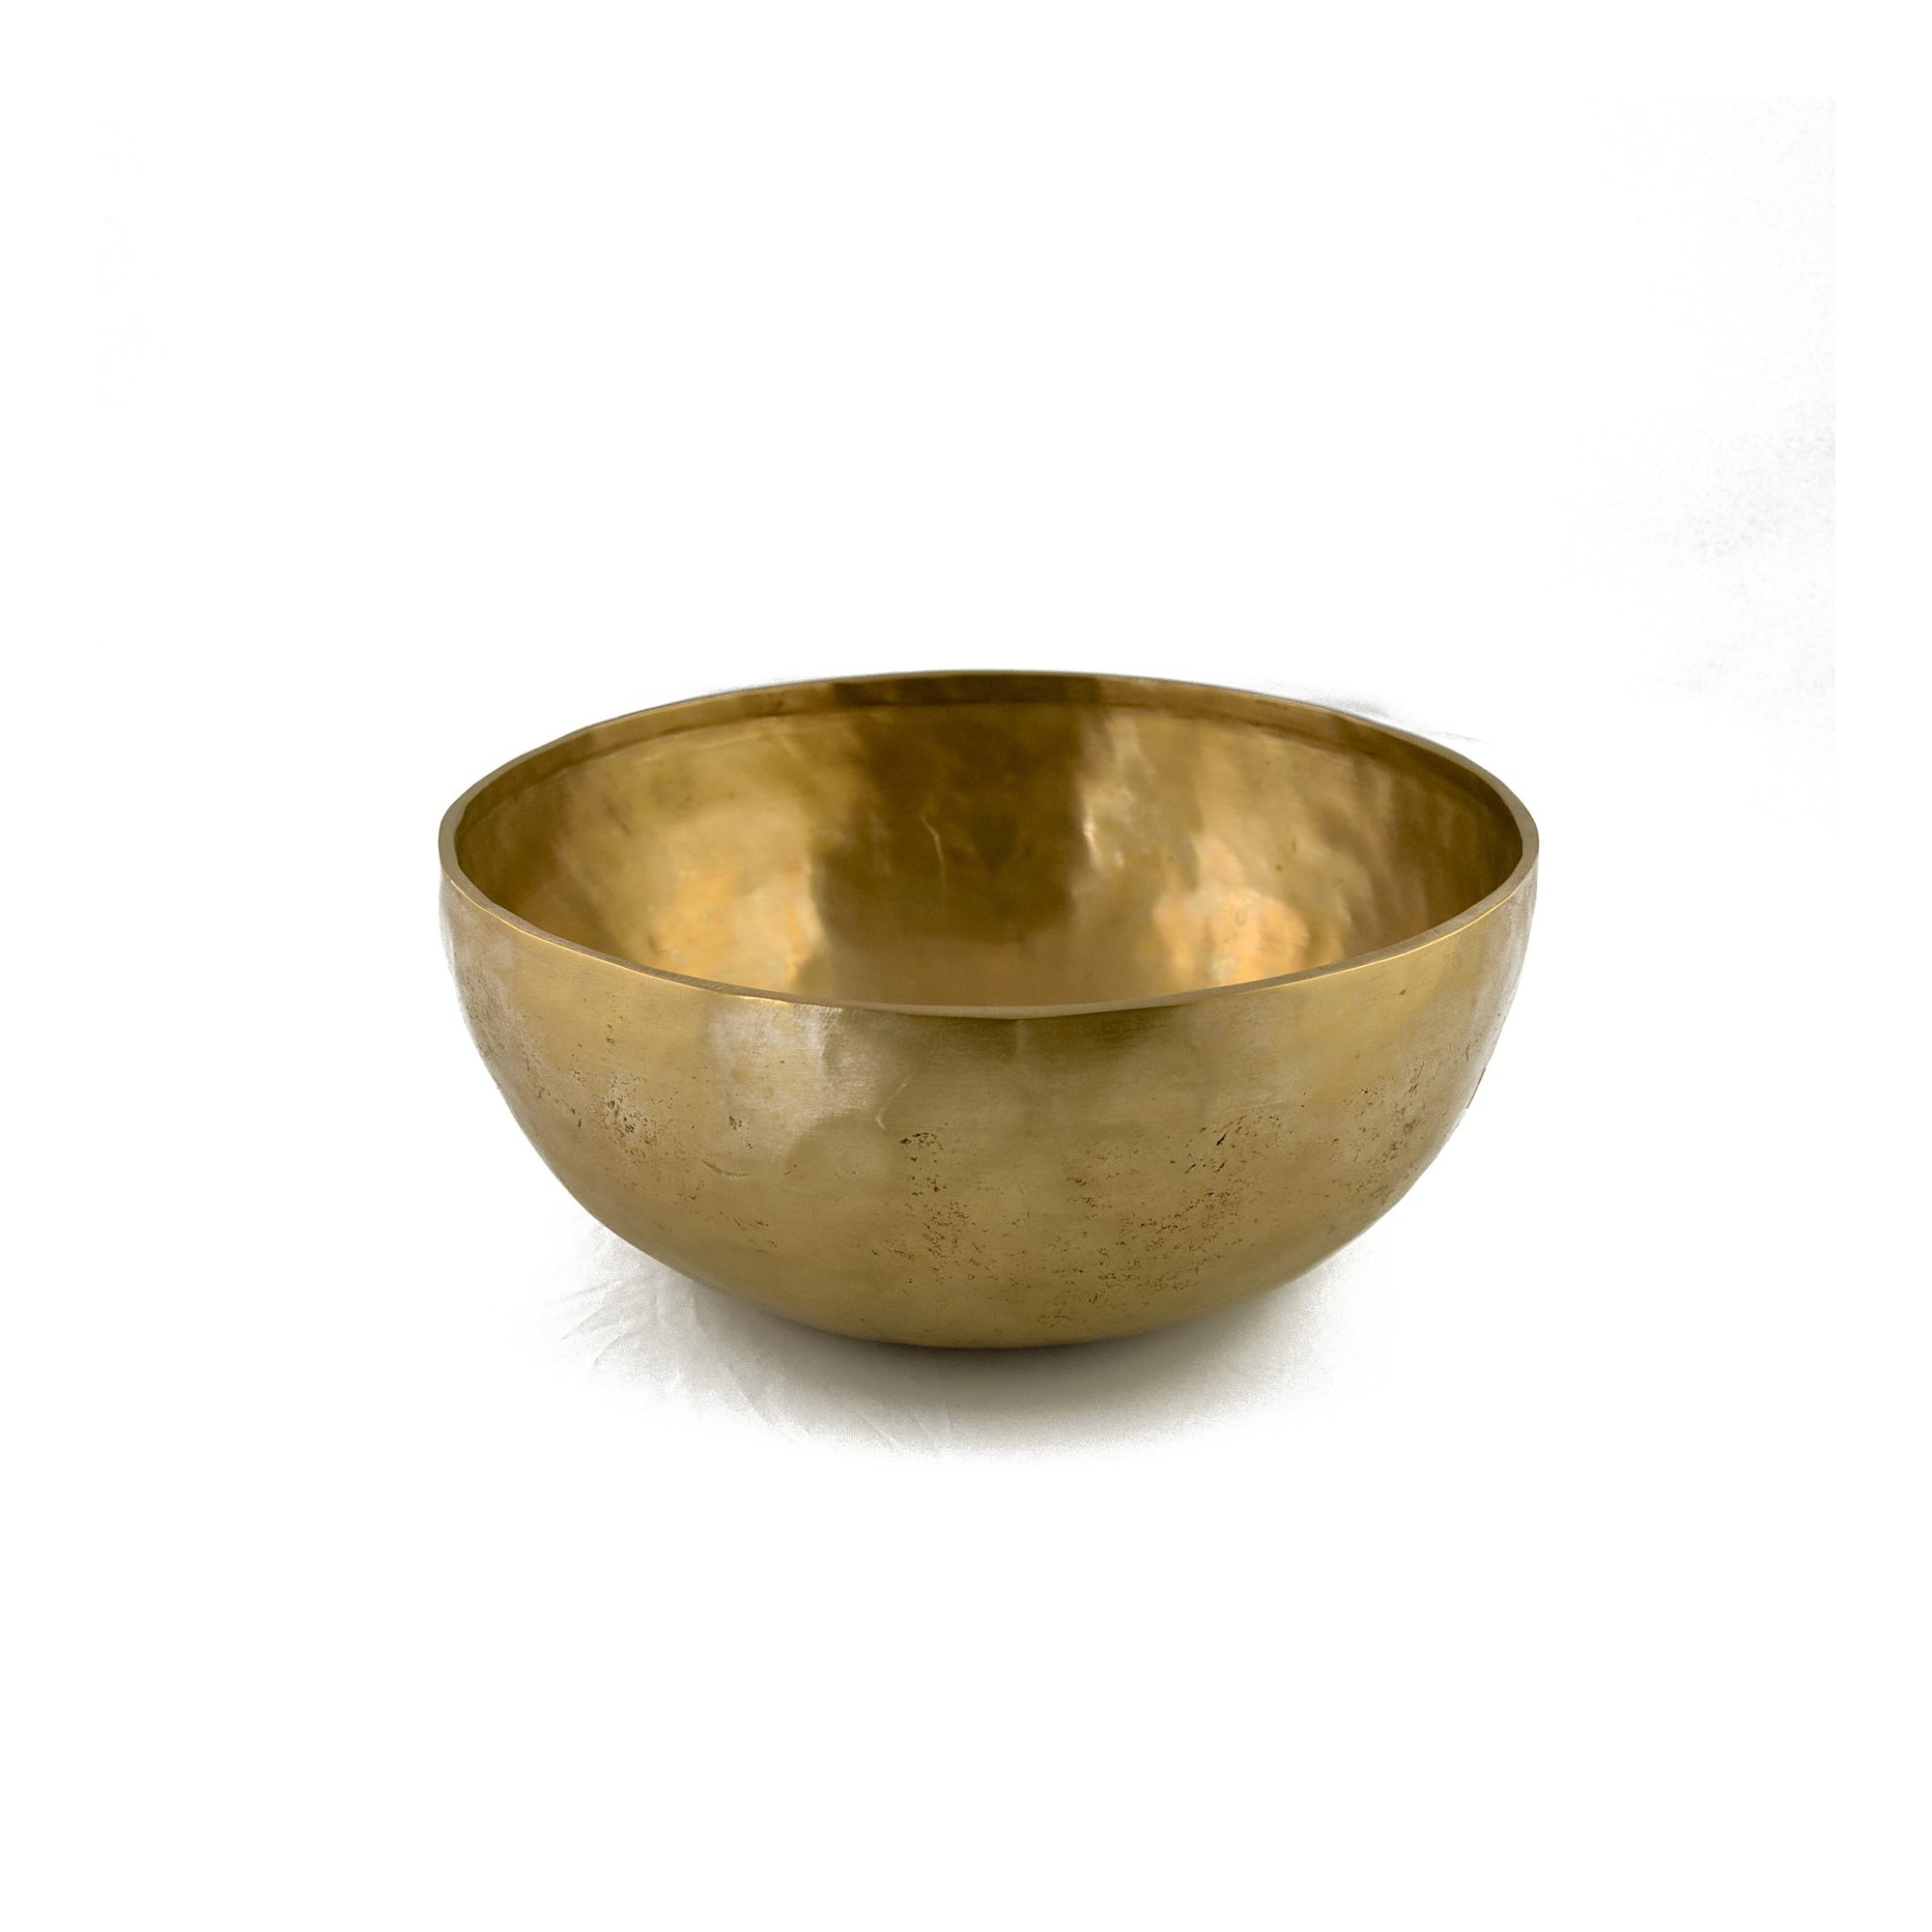 Tibetan Singing Bowl (Large) 1600-1799 gm